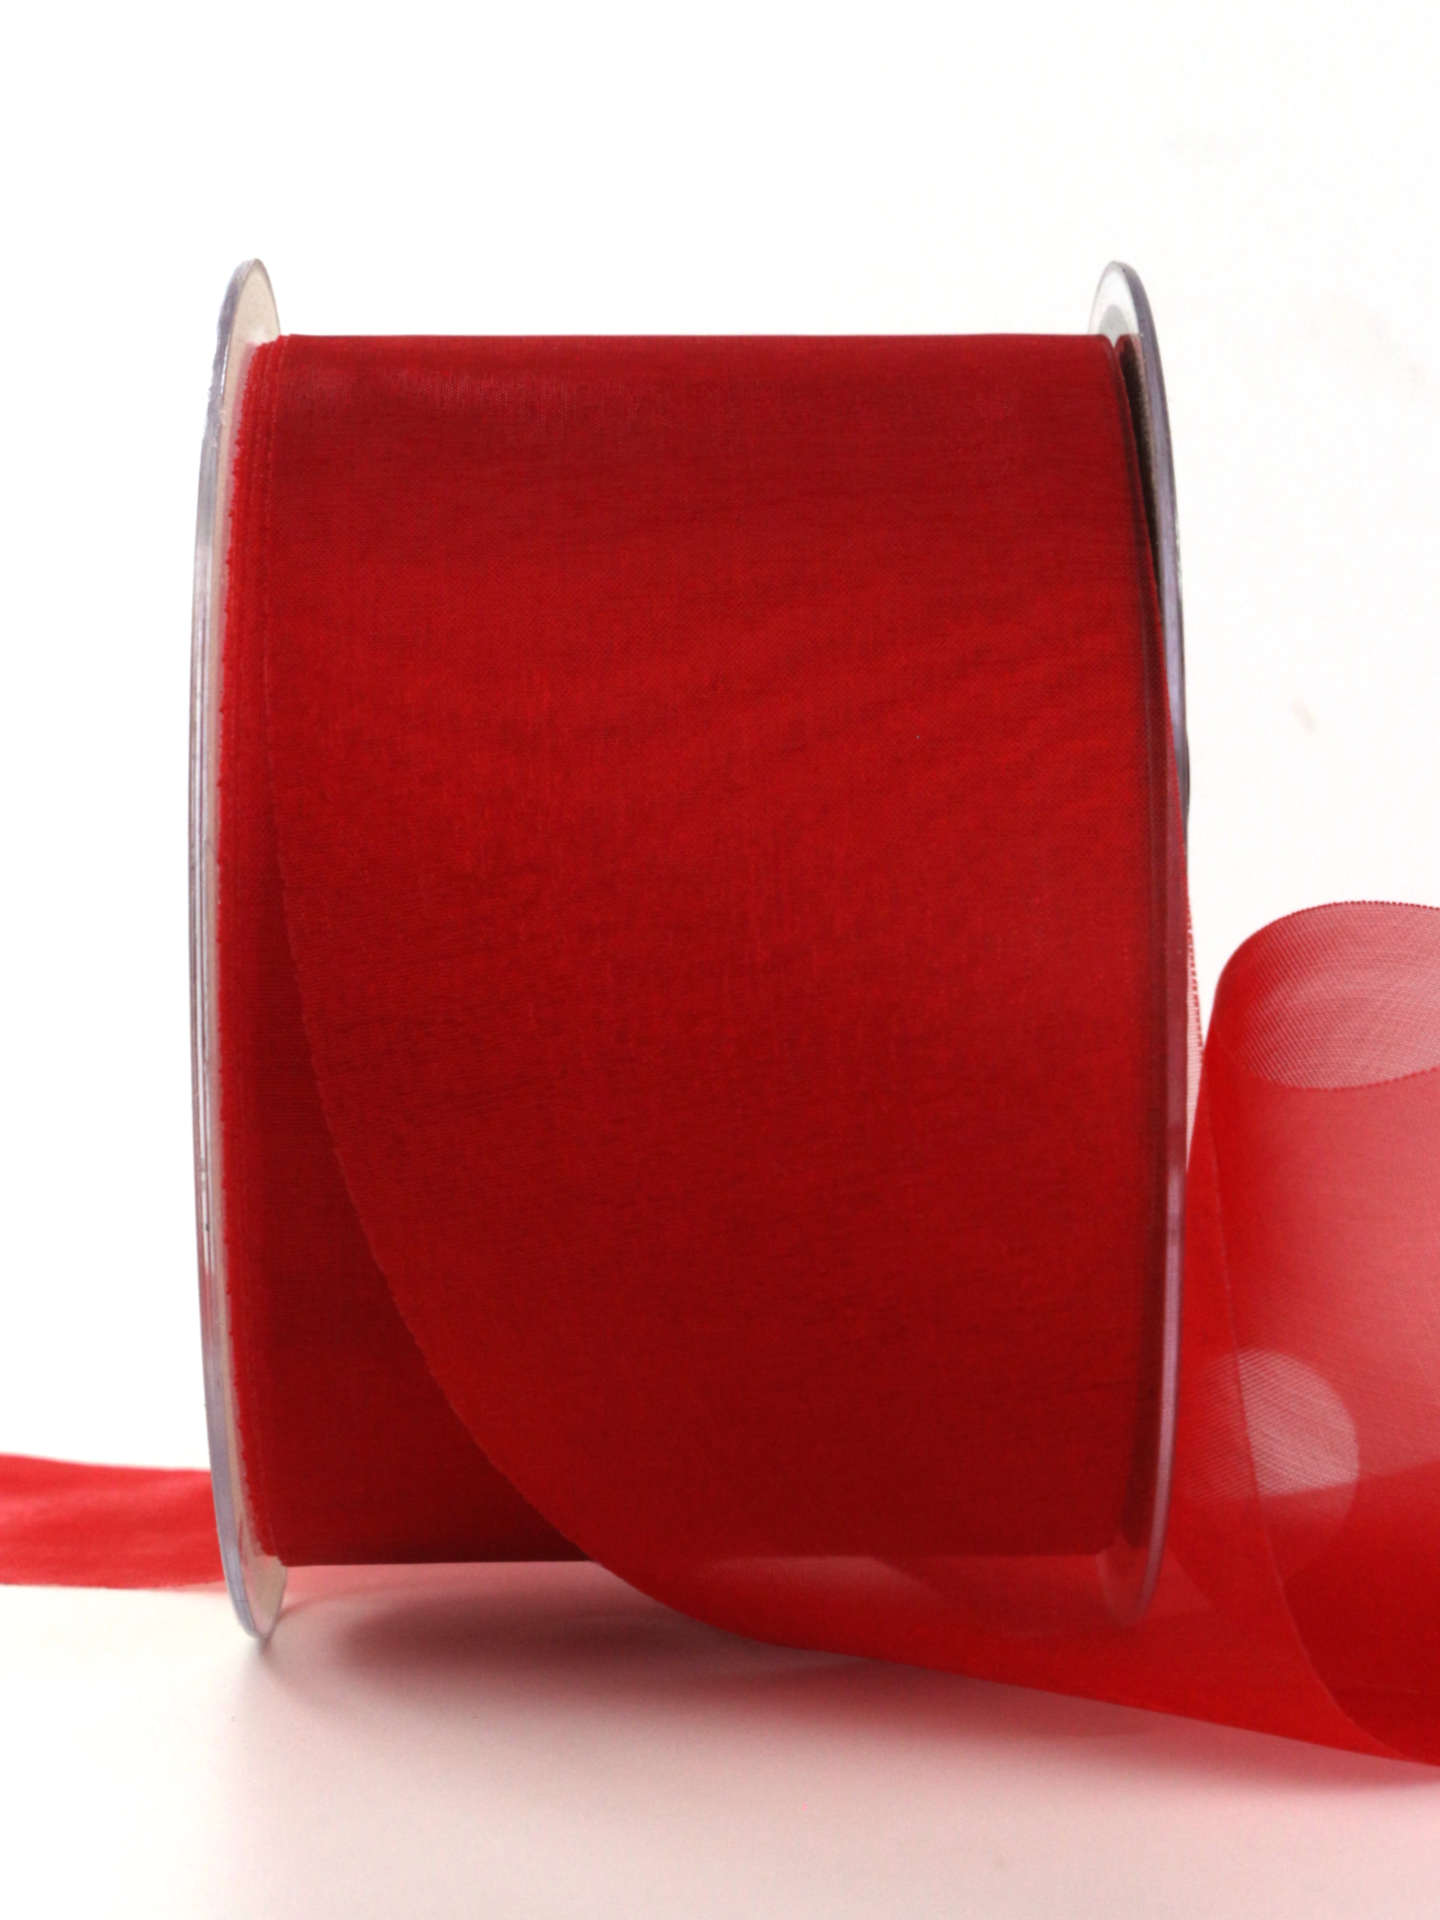 Organzaband mit Schnittkante, rot, 70 mm breit, 45 m Rolle - organzaband-einfarbig, sonderangebot, schnittkante, organzaband